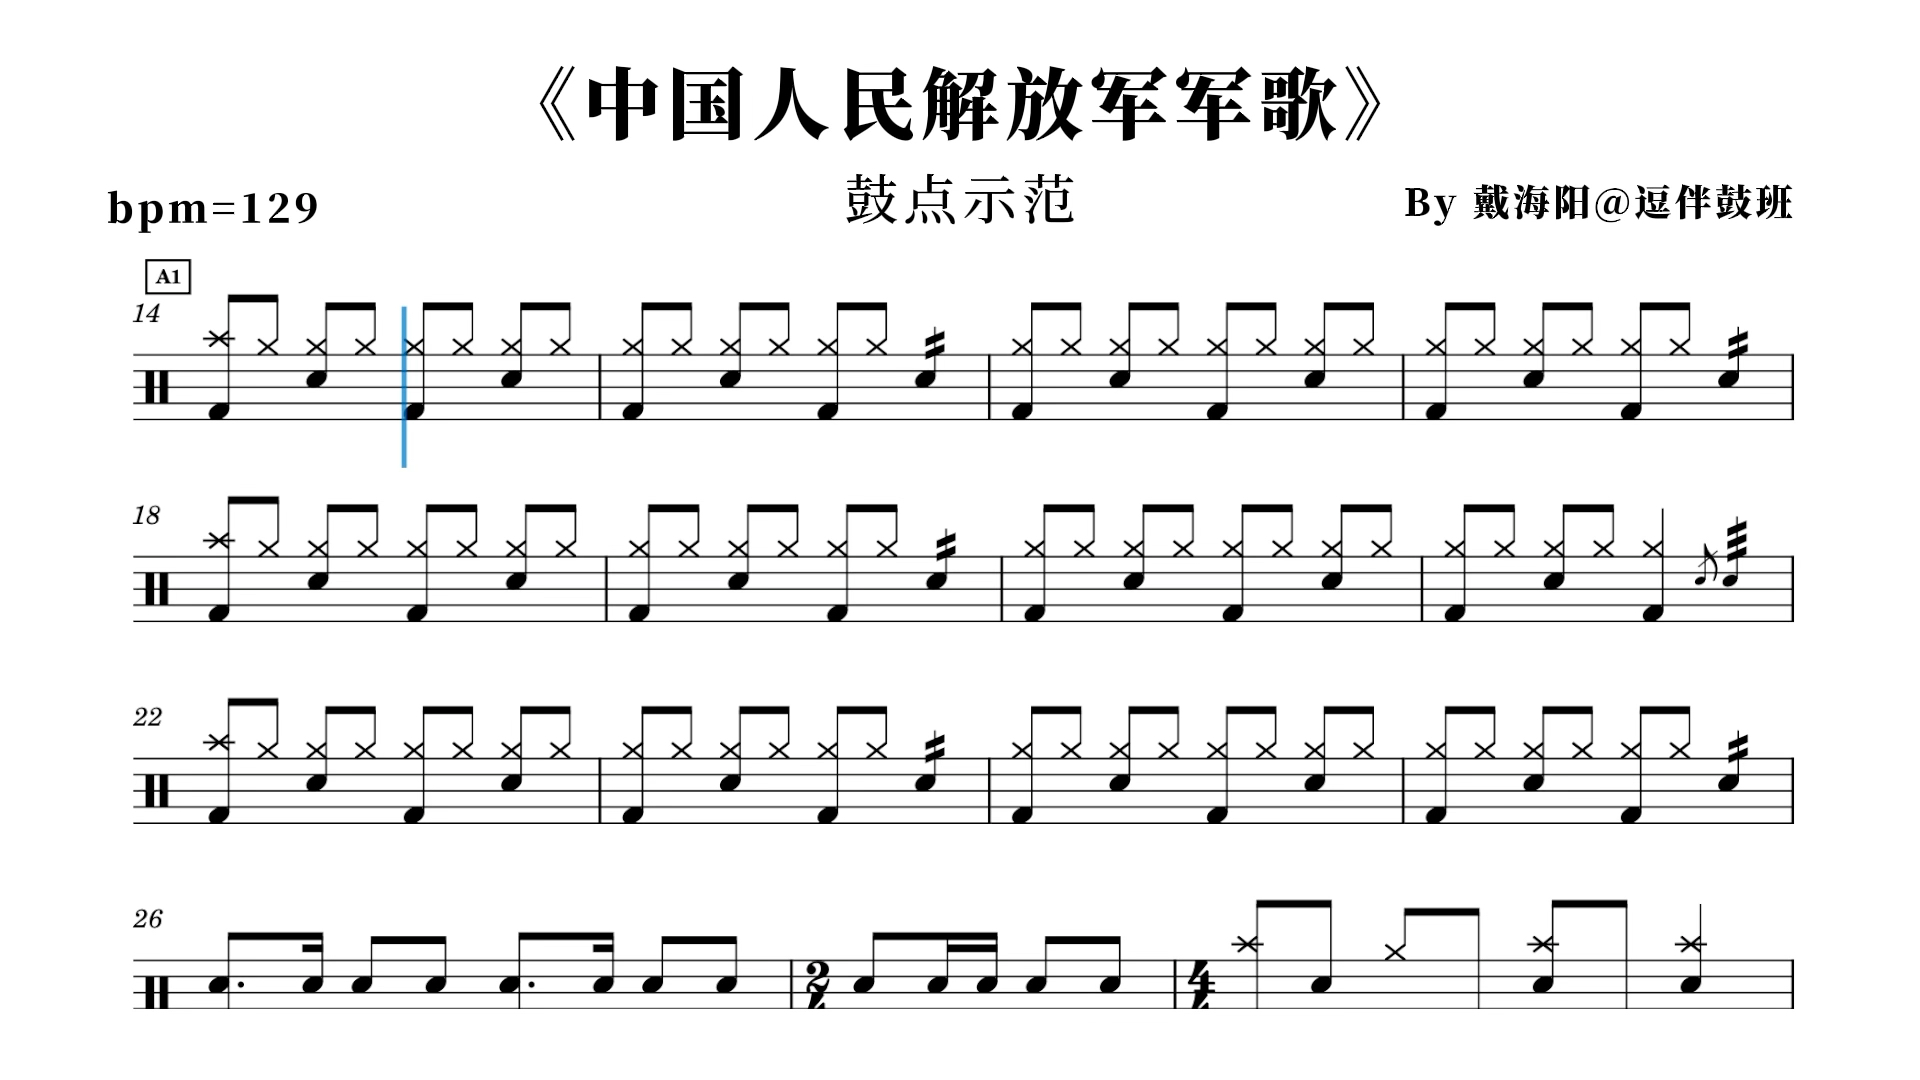 《中国人民解放军军歌 》有完整架子鼓鼓谱,高清无鼓伴奏,动态鼓谱